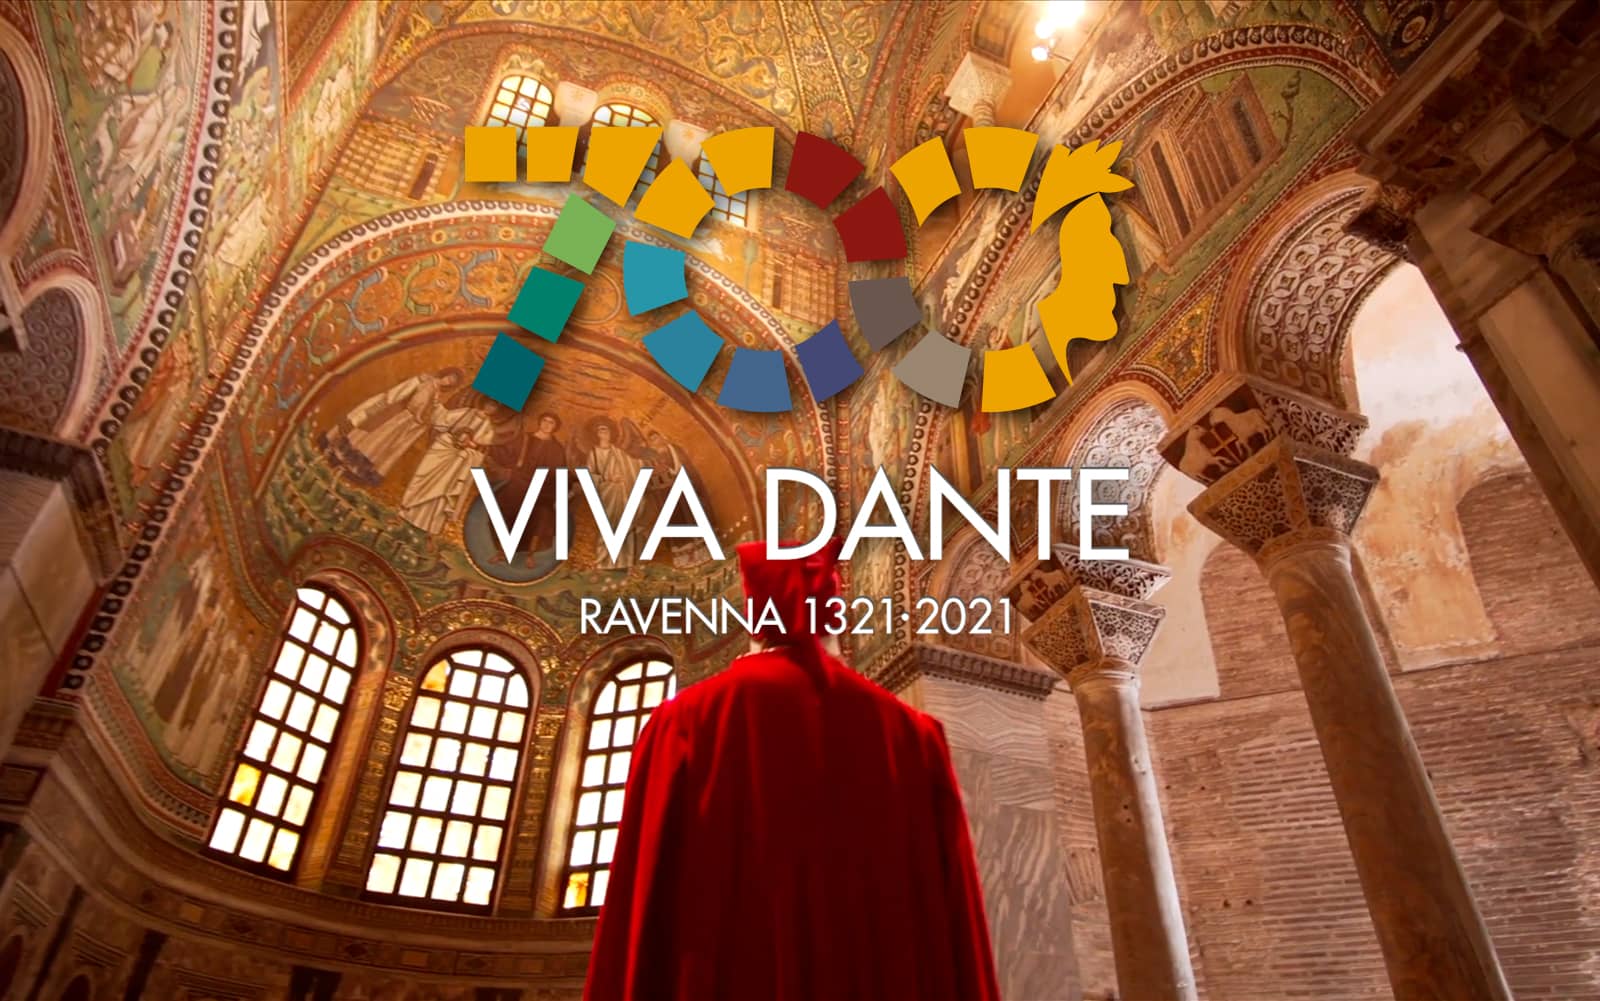 Viva Dante – Ravenna 2020/2021